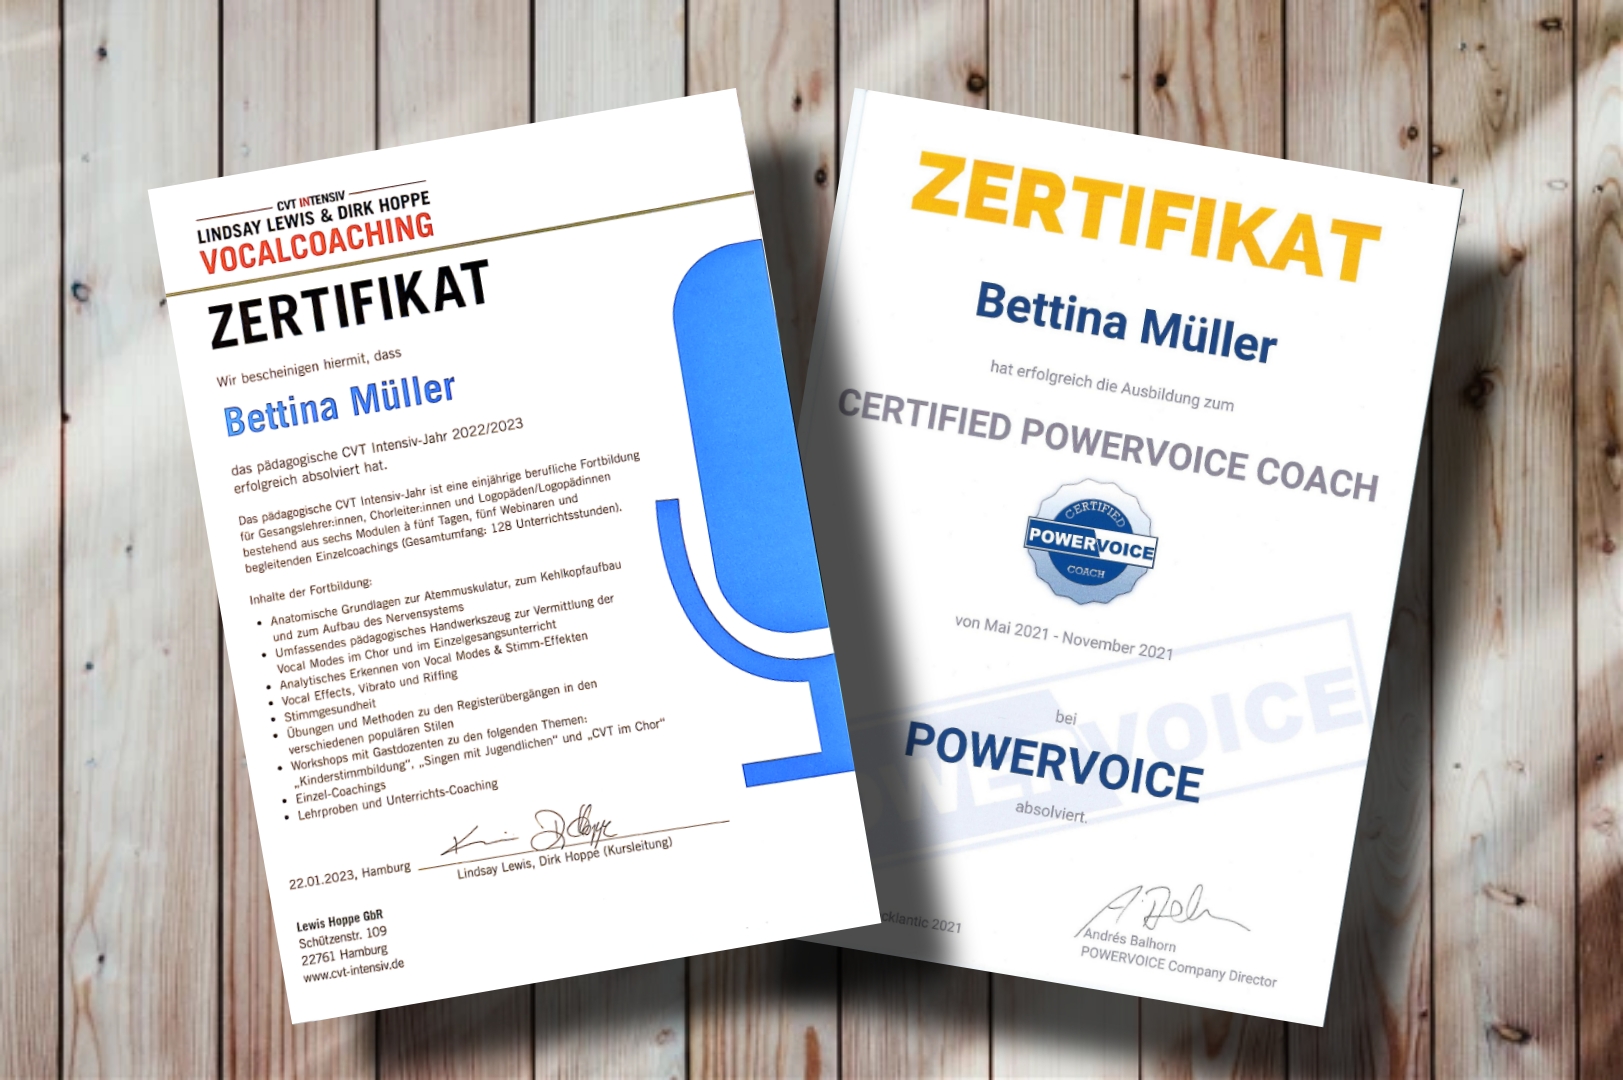 Zertifikate-CVT-Powervoice-Bettina-Mueller